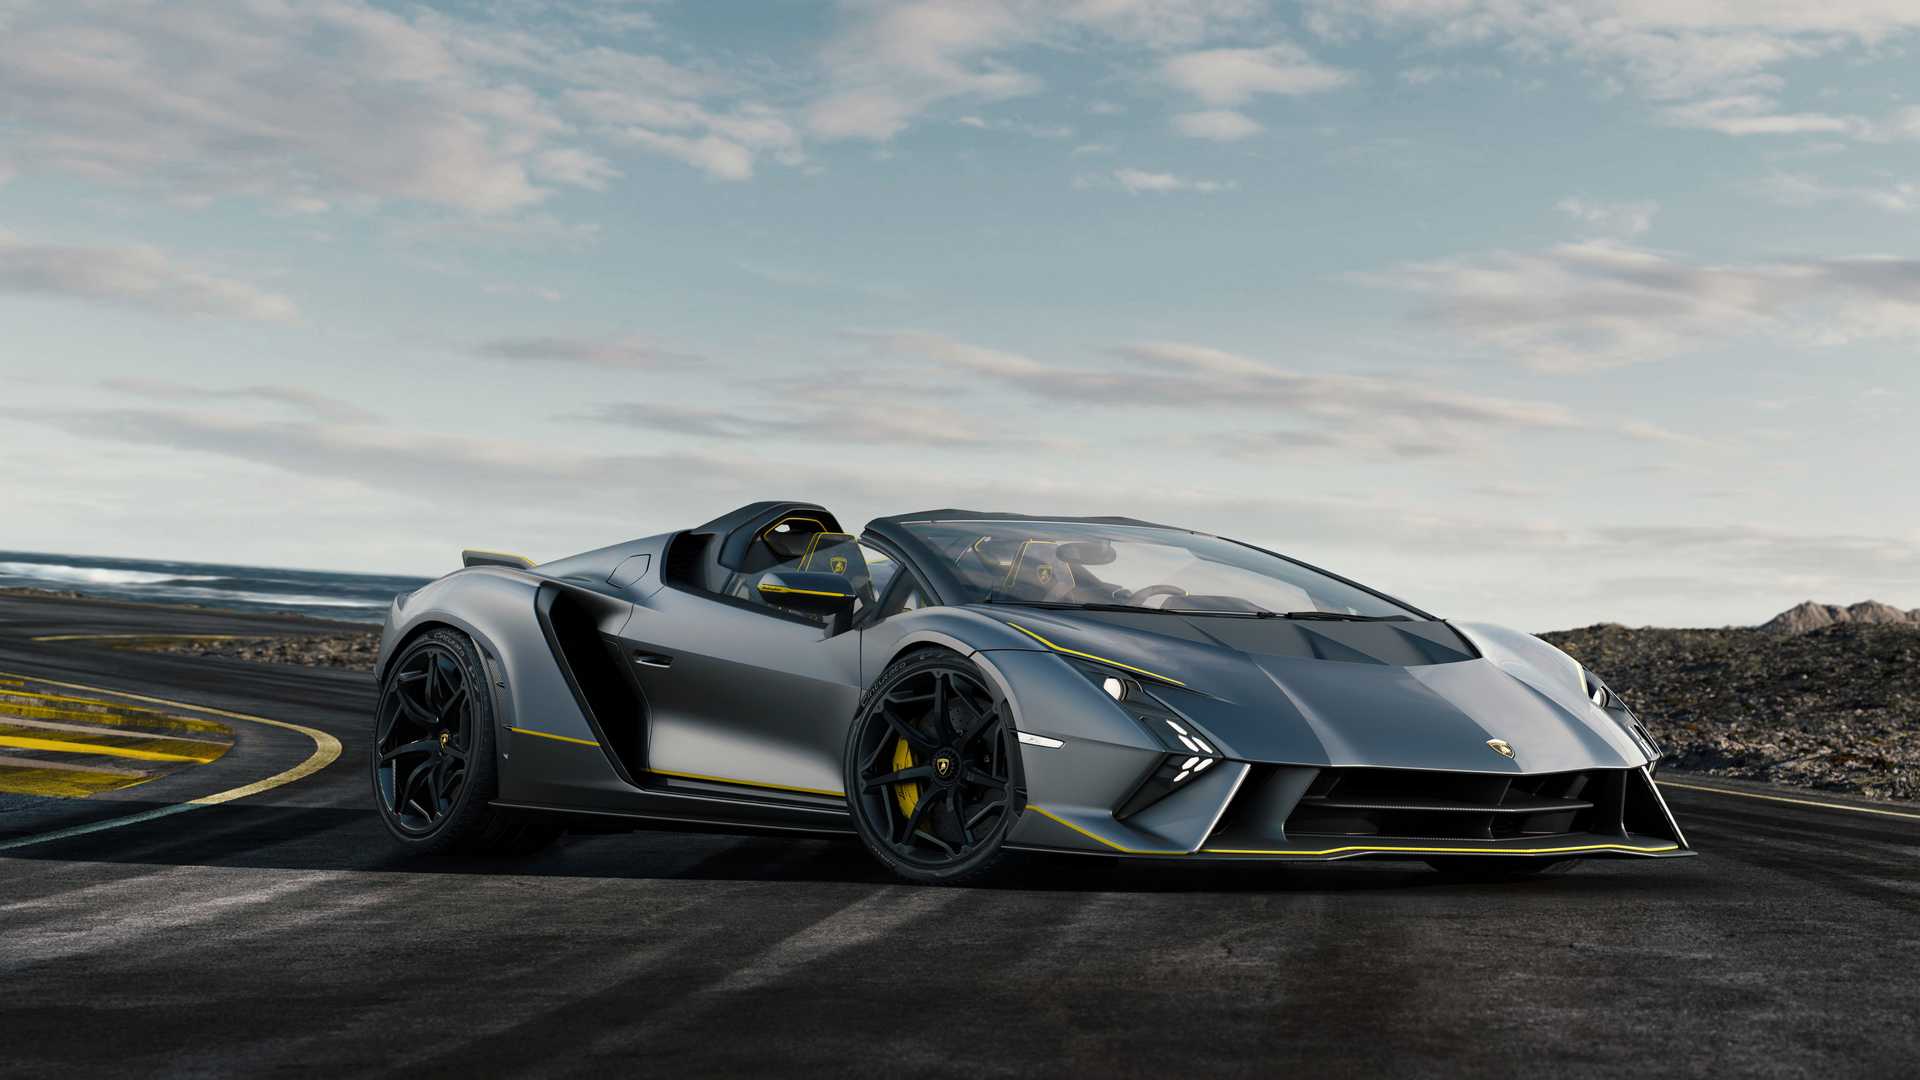 Lamborghini ra mắt bộ đôi siêu xe V12 chạy xăng cuối cùng, sau đây sẽ toàn siêu xe điện êm ru chưa biết nẹt pô kiểu gì - Ảnh 15.